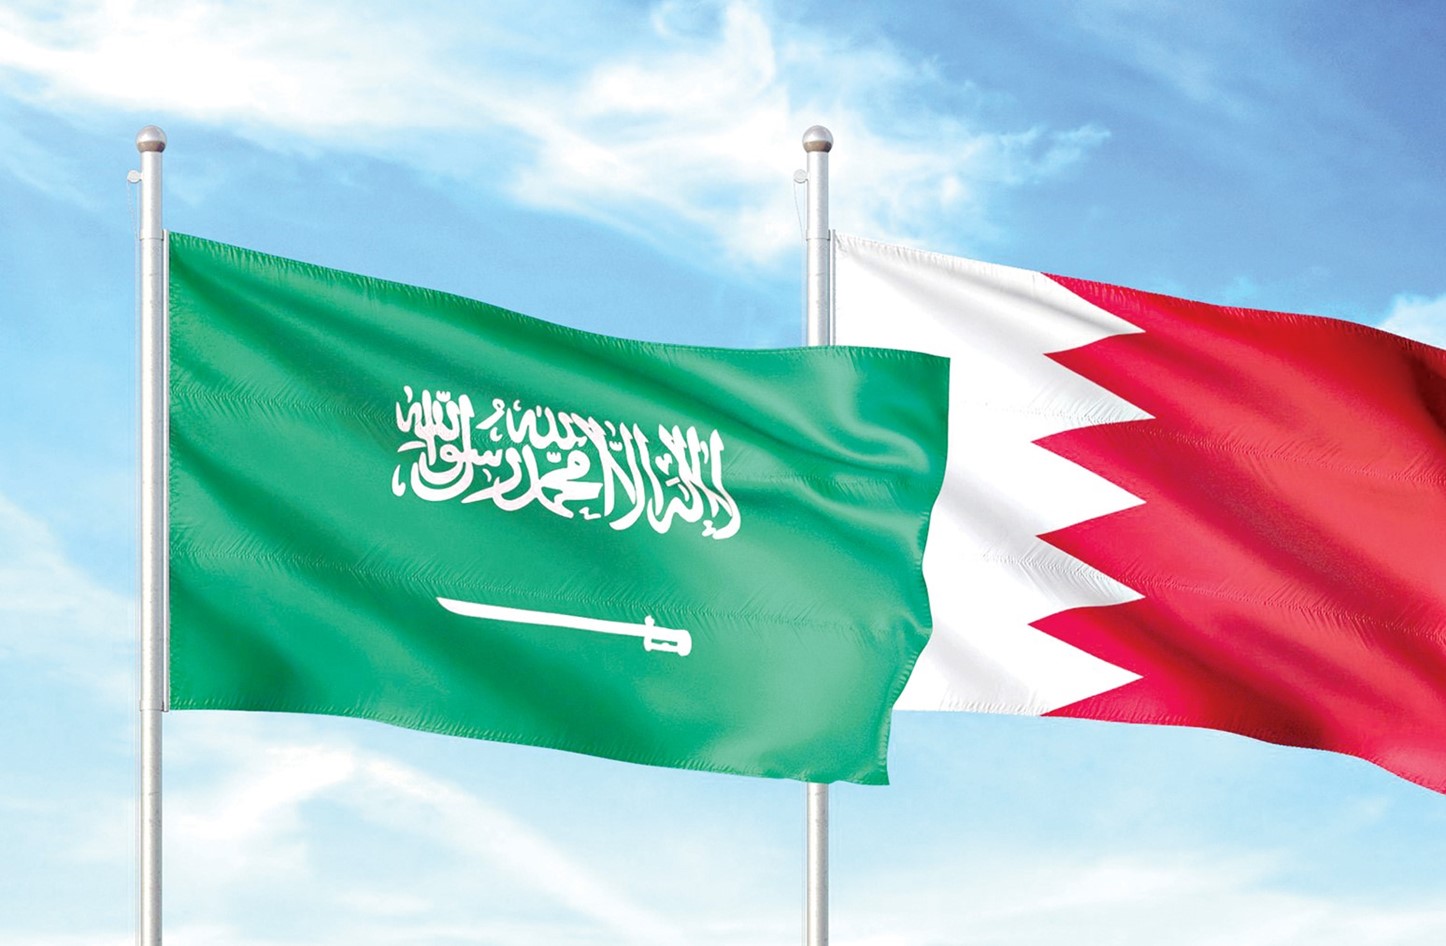 البحرين: صواريخ وطائرات الحوثي المسيرة باتجاه المملكة عمل إرهابي ممنهج